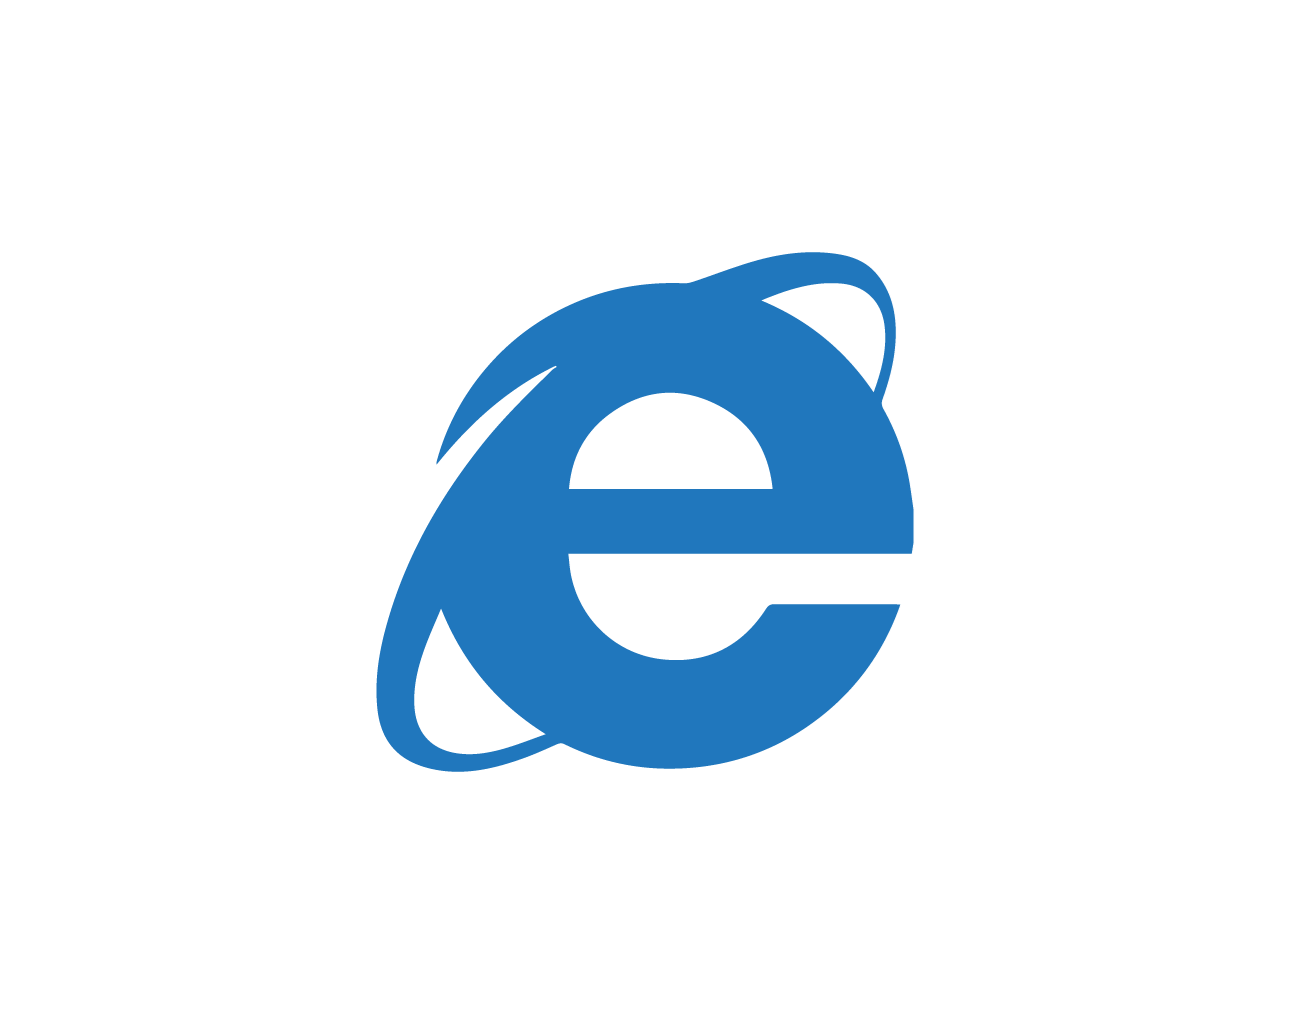 internet explorer browser logo